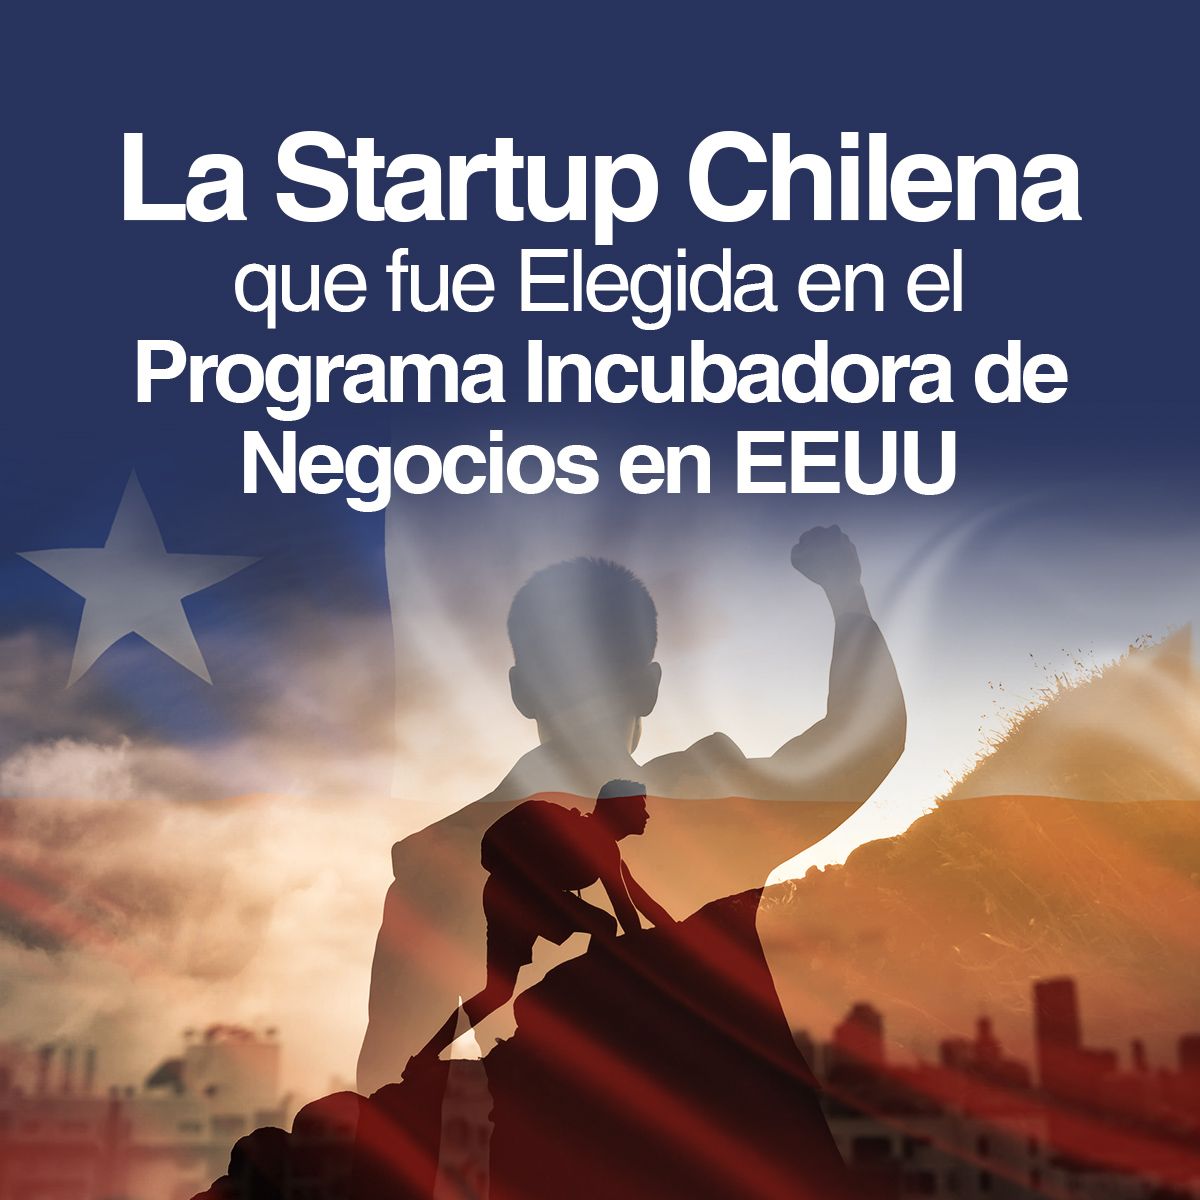 La Startup Chilena que fue Elegida en el Programa Incubadora de Negocios en EEUU